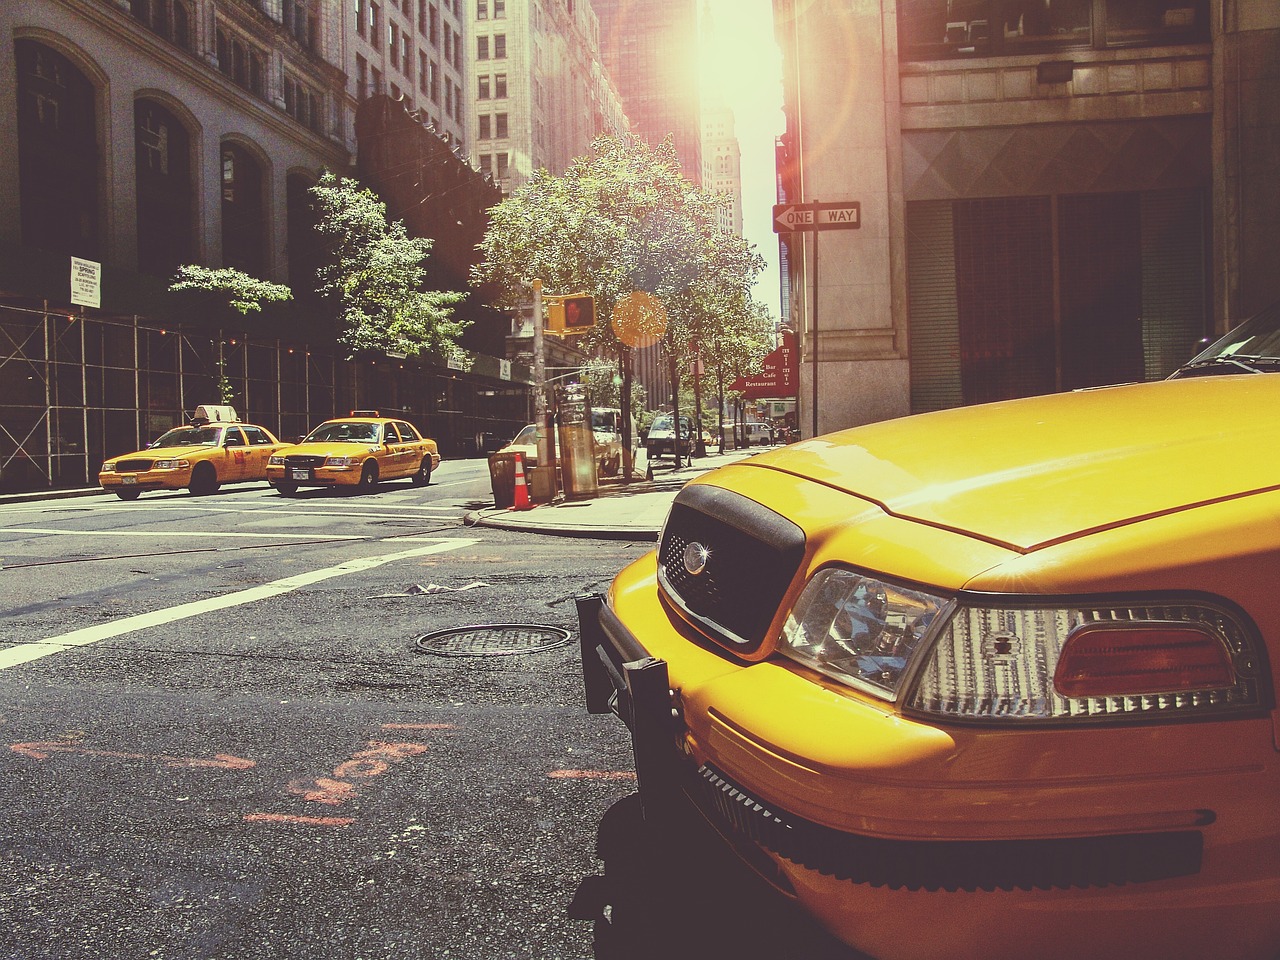 Comment appeler un taxi: Guide pour appeler un taxi rapidement et efficacement